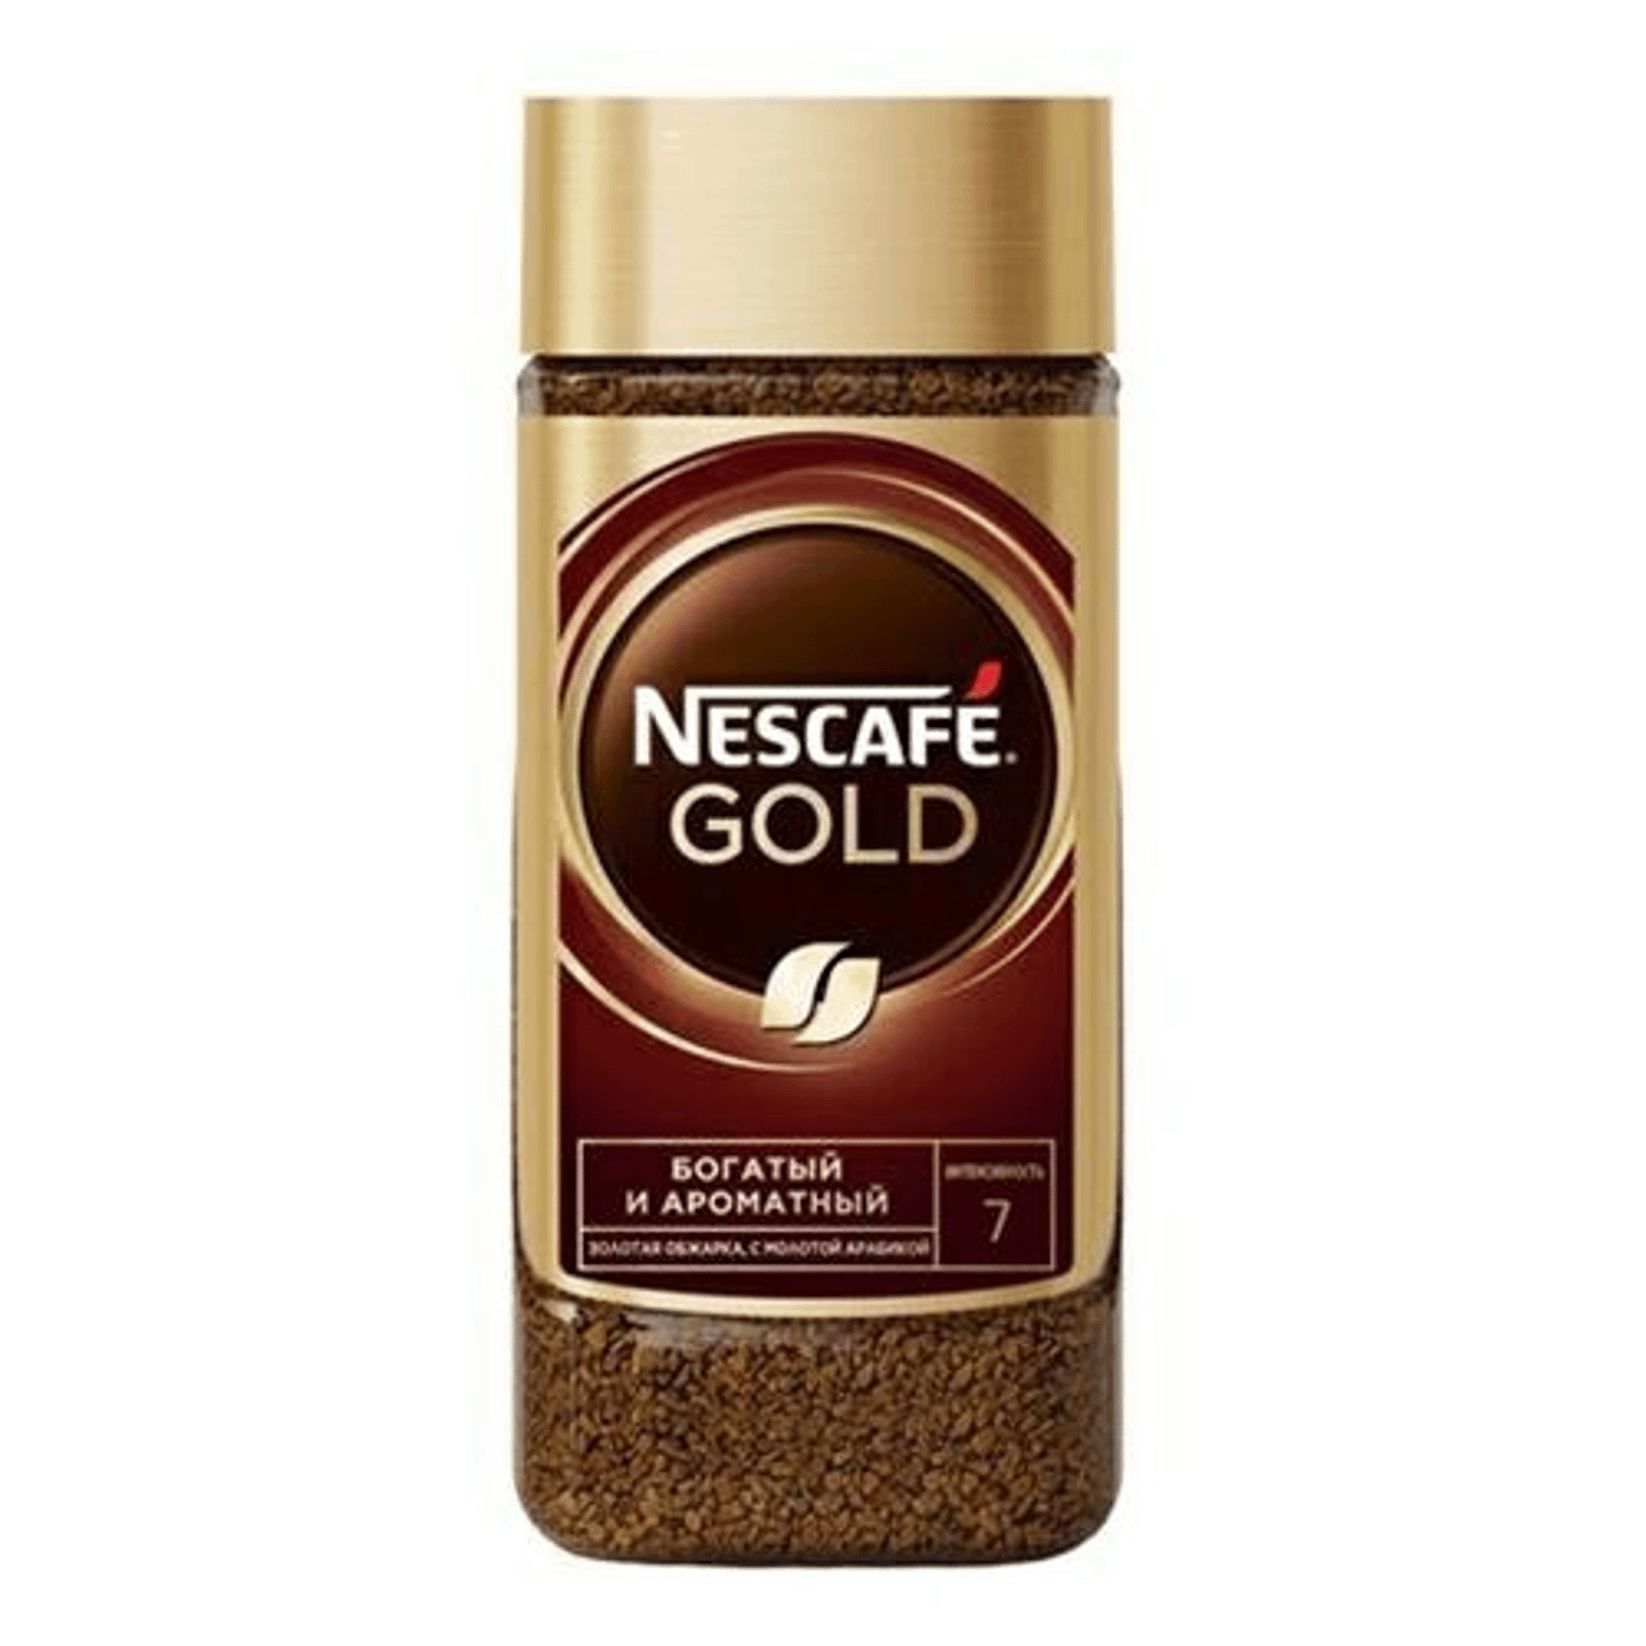 Вода кофе растворимый. Нескафе Голд 95 гр. Кофе Нескафе Голд 95г. Кофе Nescafe Gold, 95гр. Кофе Нескафе Голд 95г ст/б.